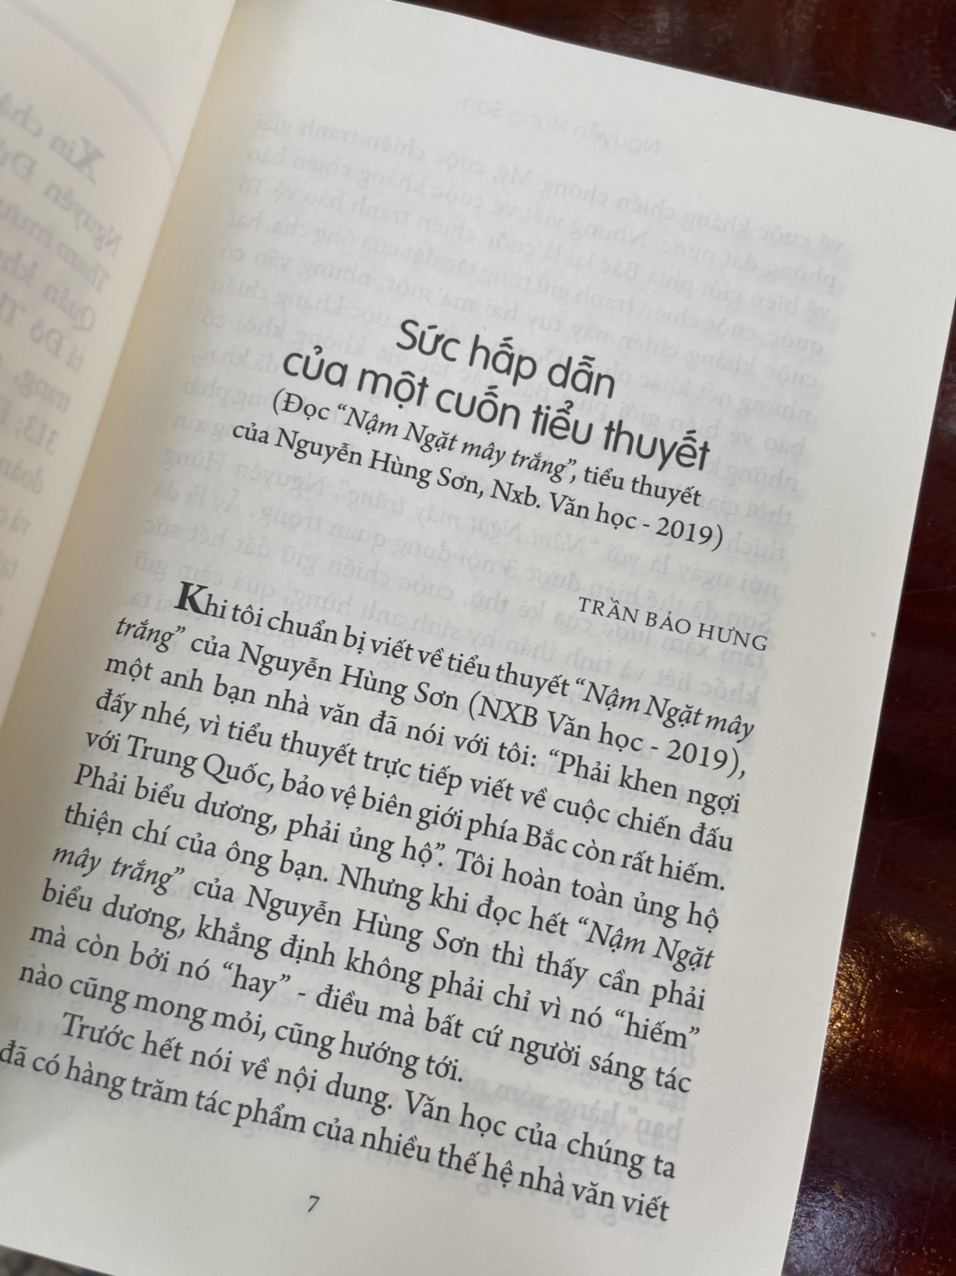 [Giải Sách Quốc Gia 2022] NẬM NGẶT MÂY TRẮNG (tiểu thuyết về cuộc chiến biên giới Vị Xuyên) – Nguyễn Hùng Sơn – NXB Văn Học (bìa mềm)